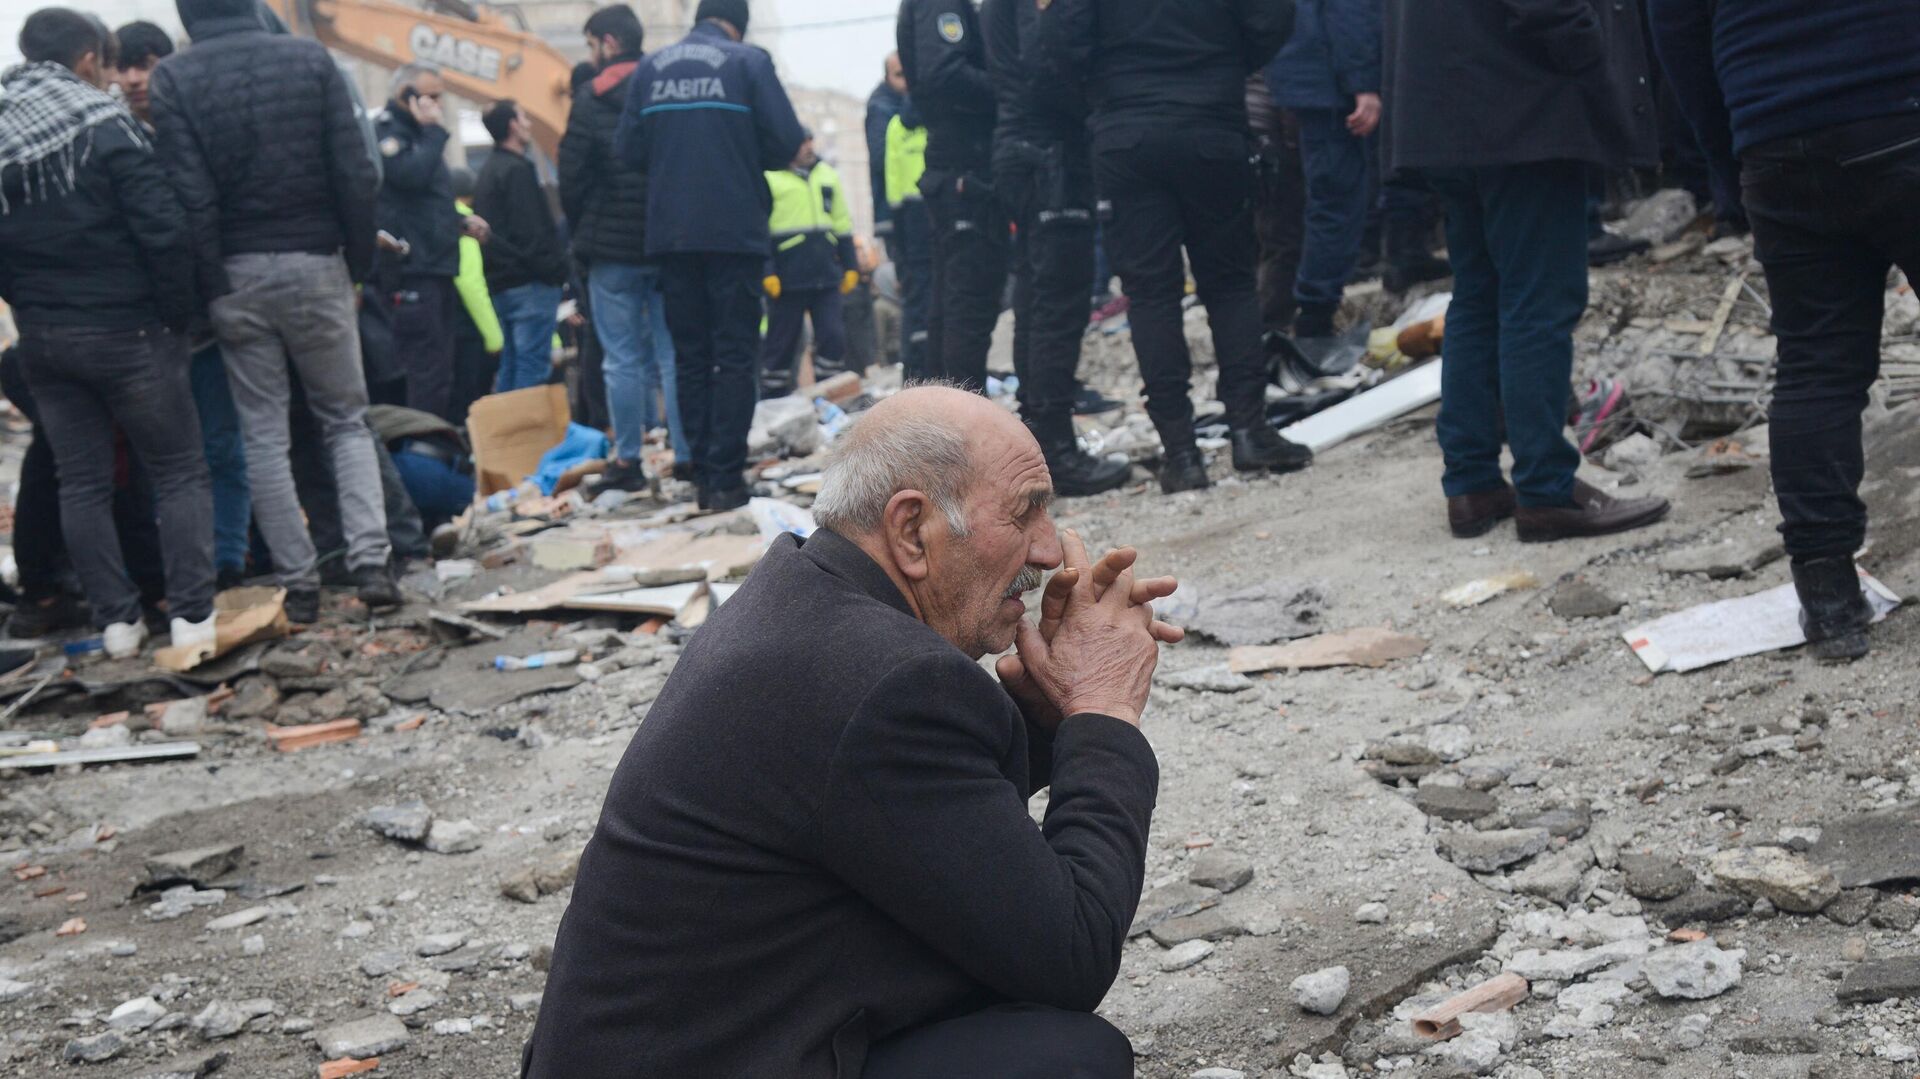 Мужчина реагирует, когда люди ищут выживших среди завалов в Диярбакыре, 6 февраля 2023 года, после землетрясения магнитудой 7,8, которое произошло на юго-востоке страны - Sputnik Абхазия, 1920, 06.02.2023